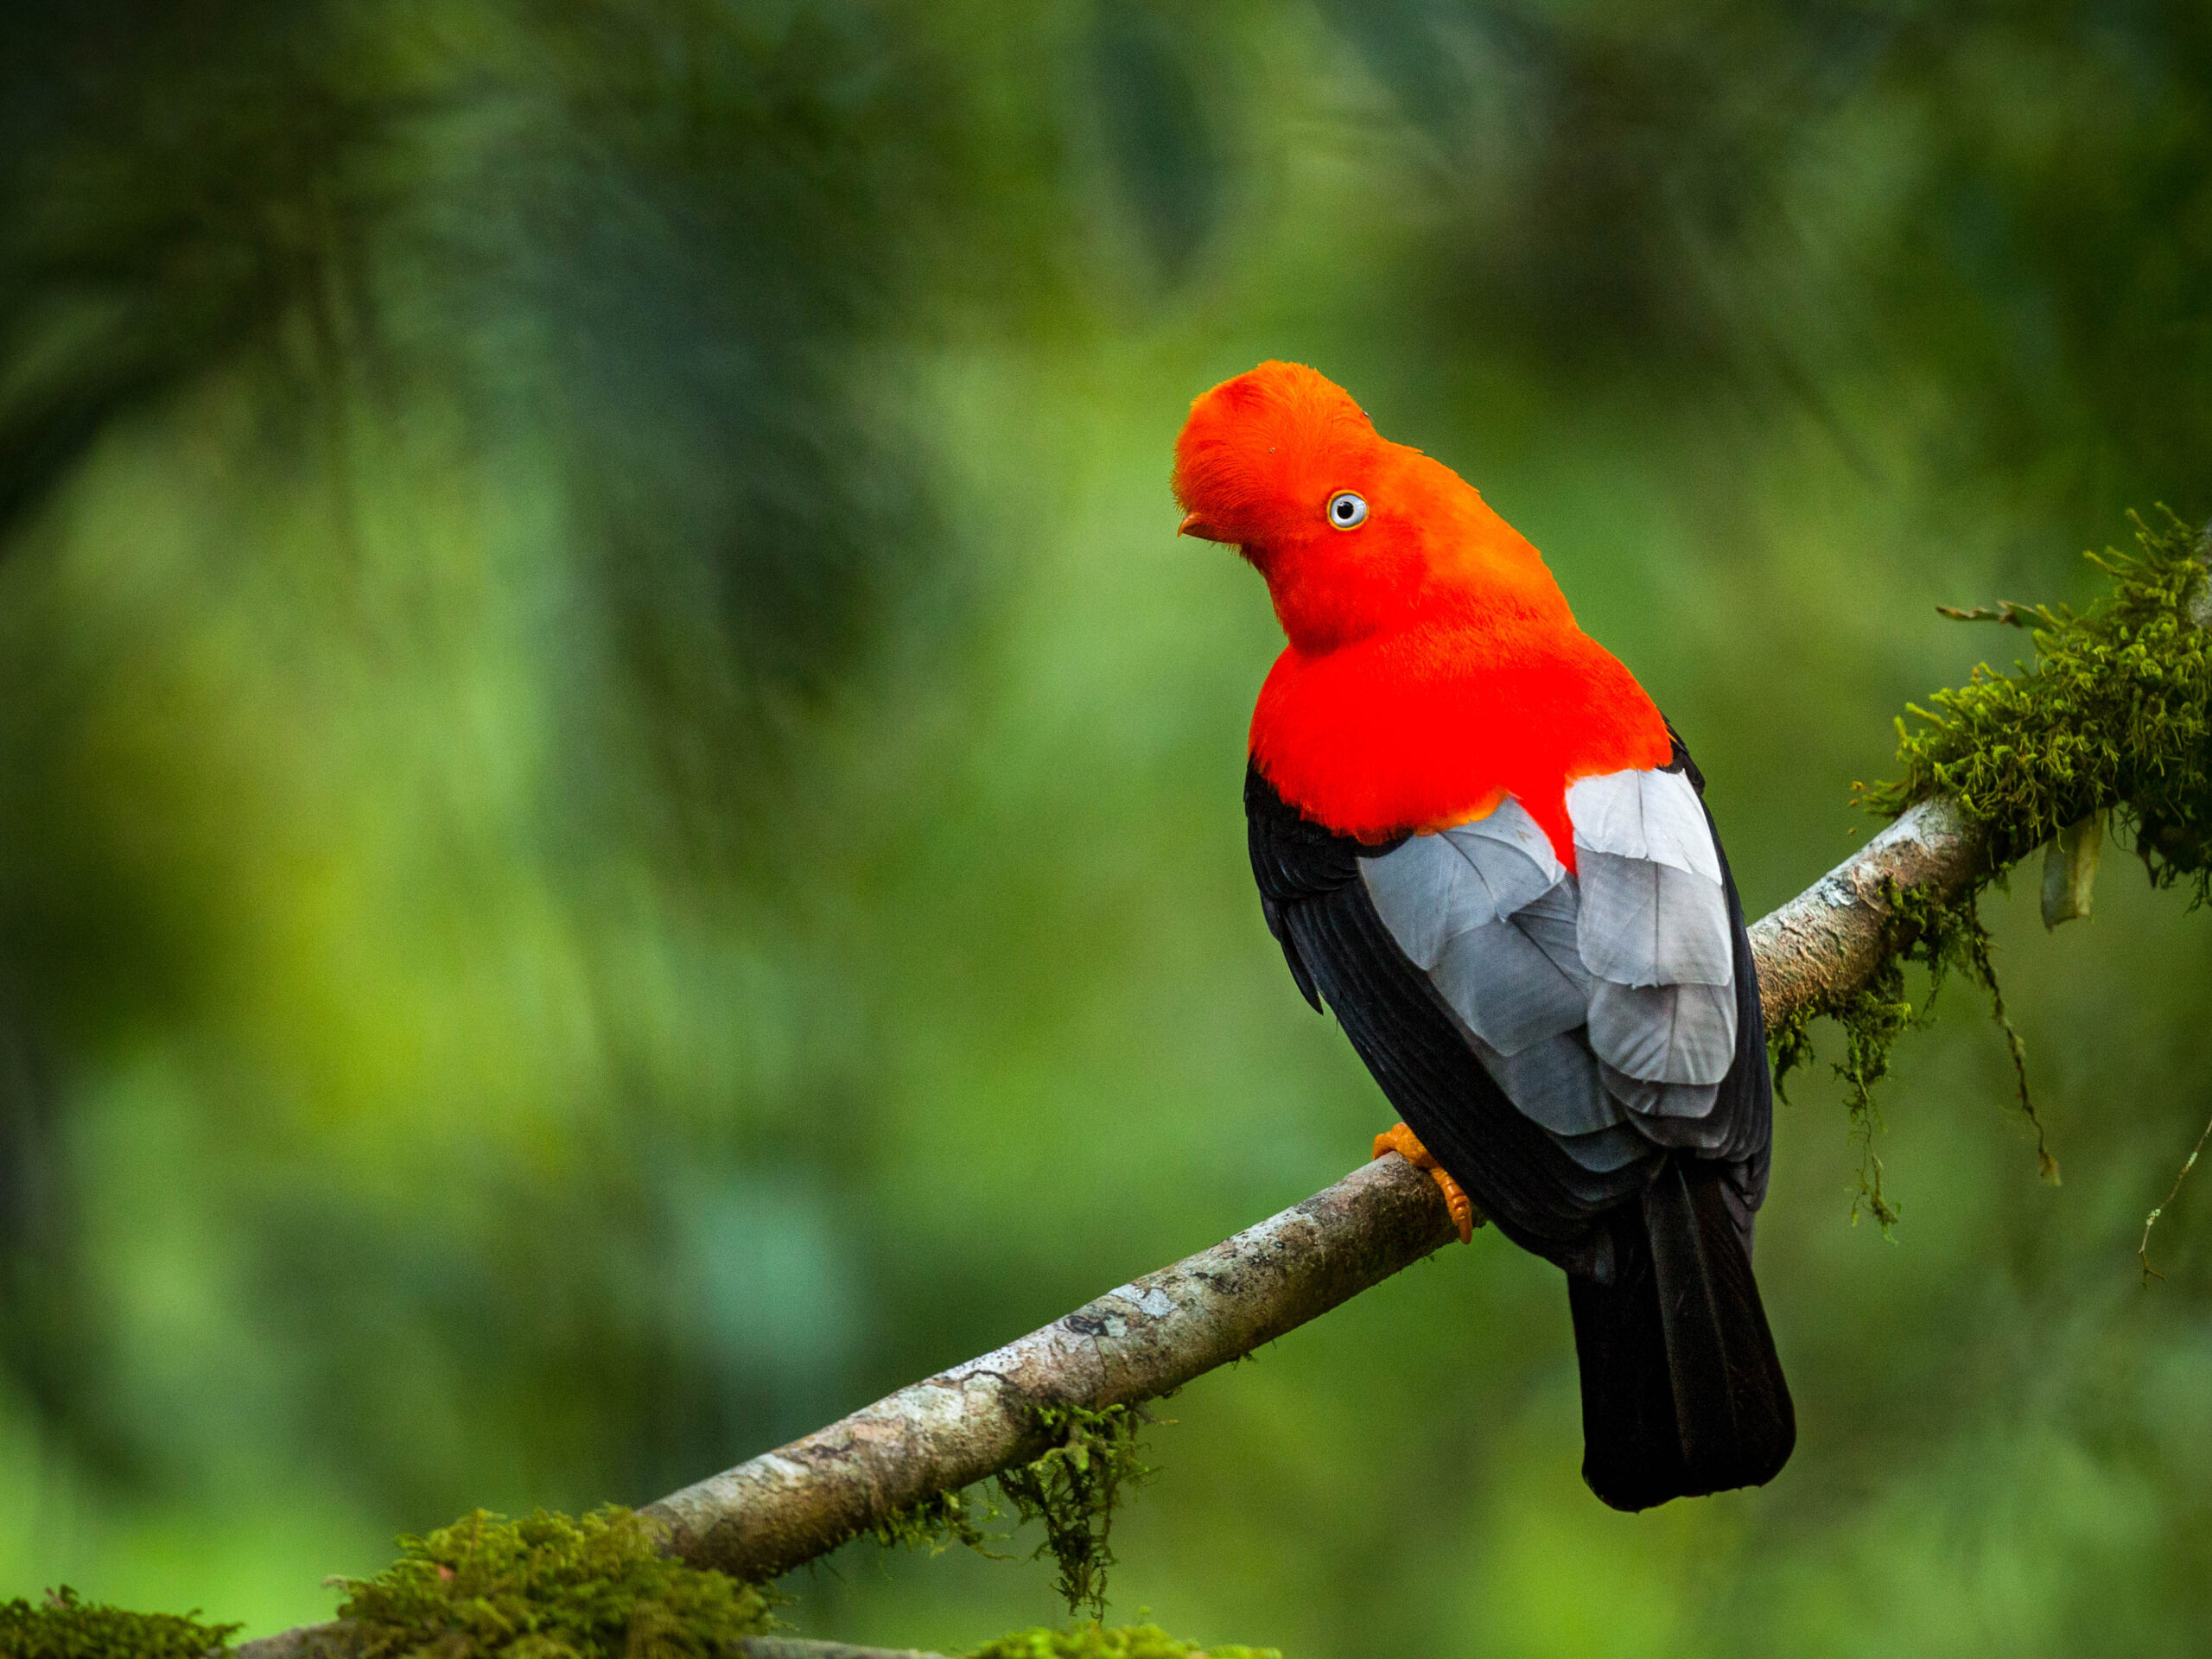 Cock-of-the-rock bird in Ecuador